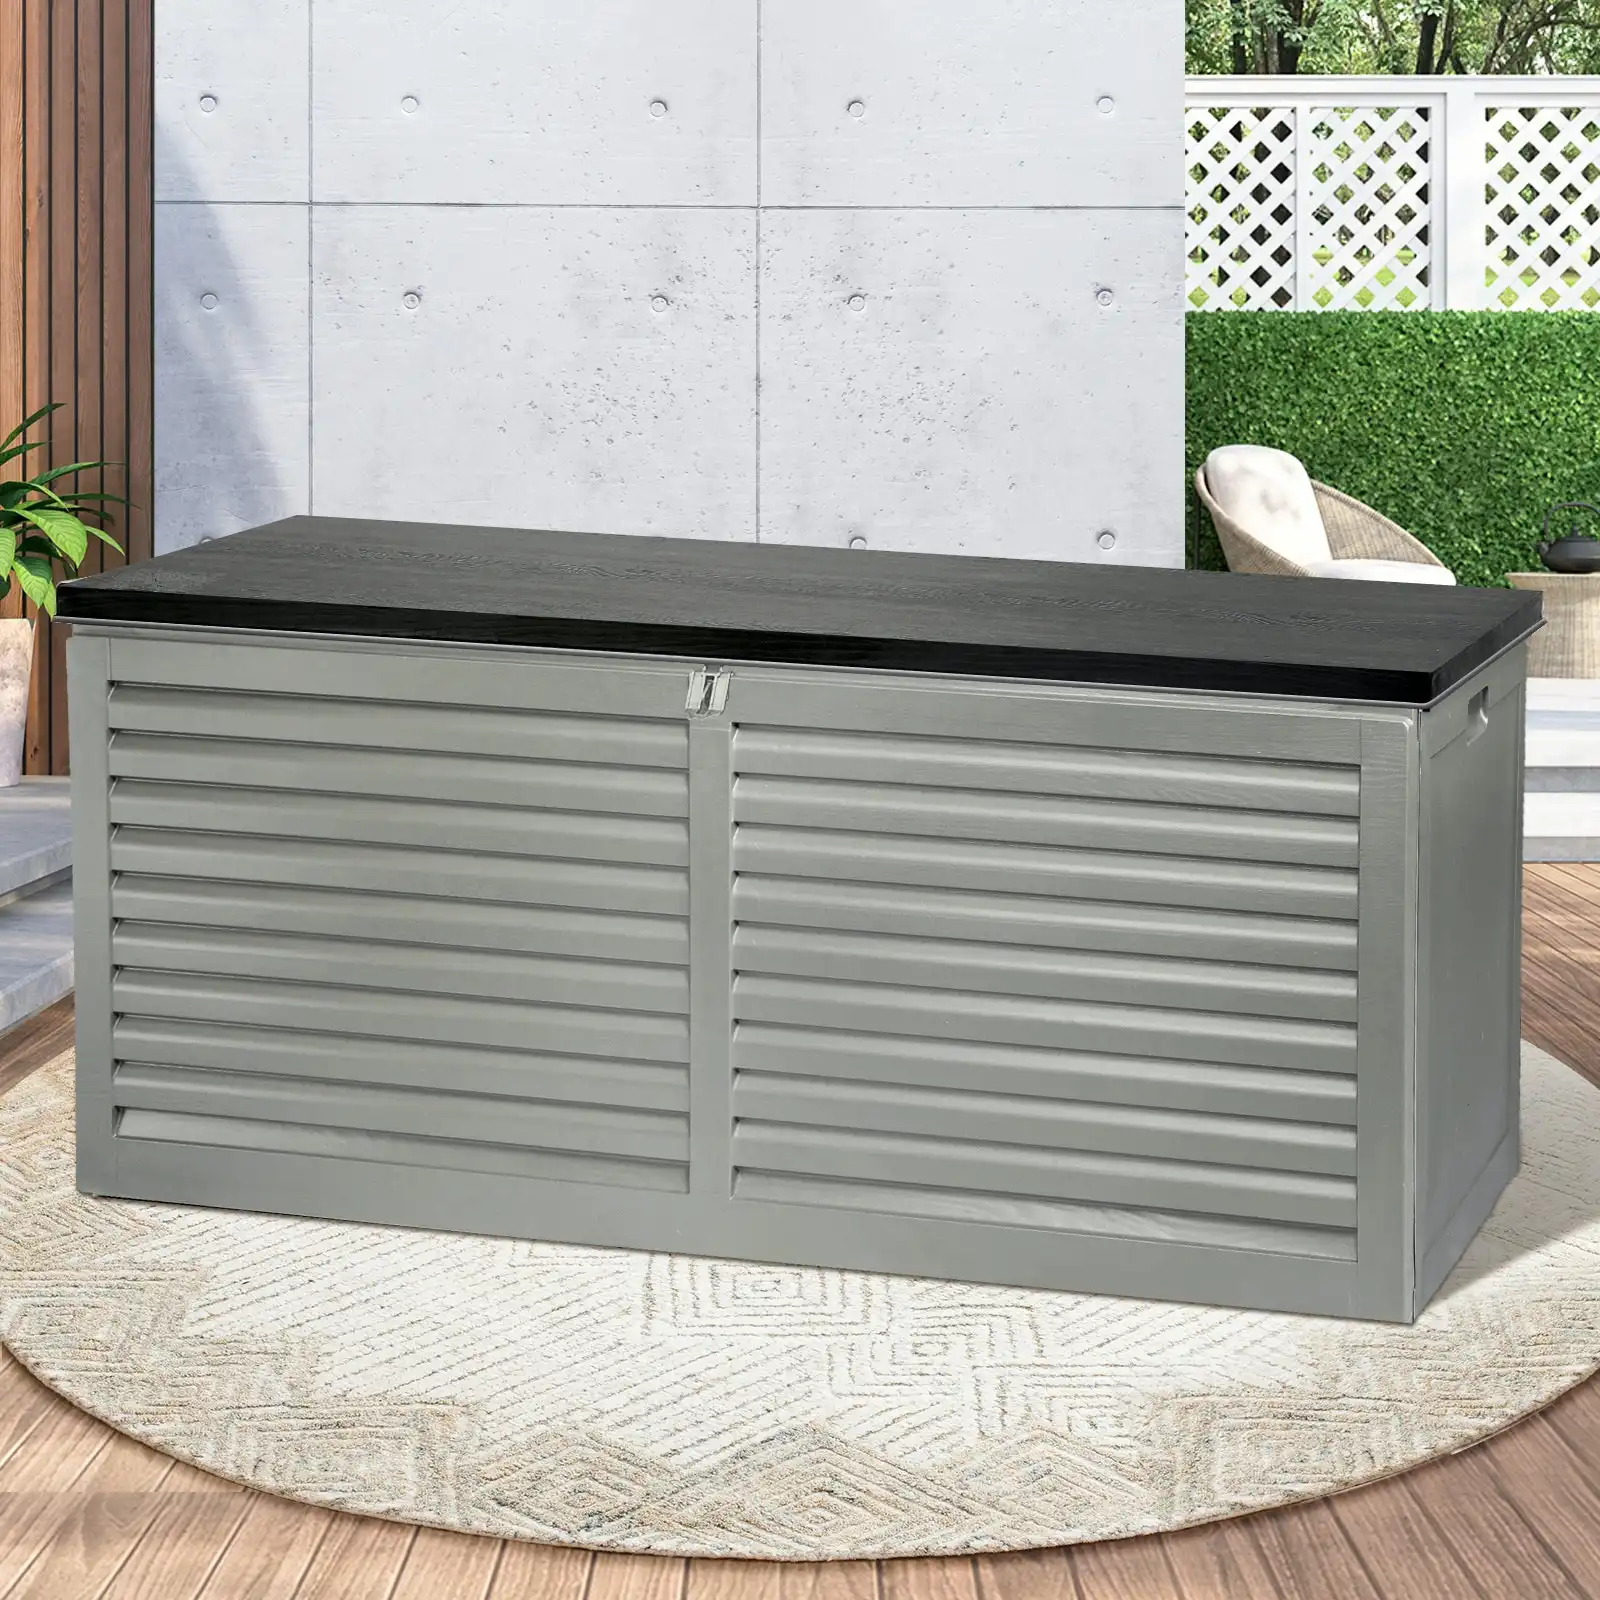 Livsip Outdoor Storage Box Container Lockable Indoor Toy Tools Garden Bench 390L